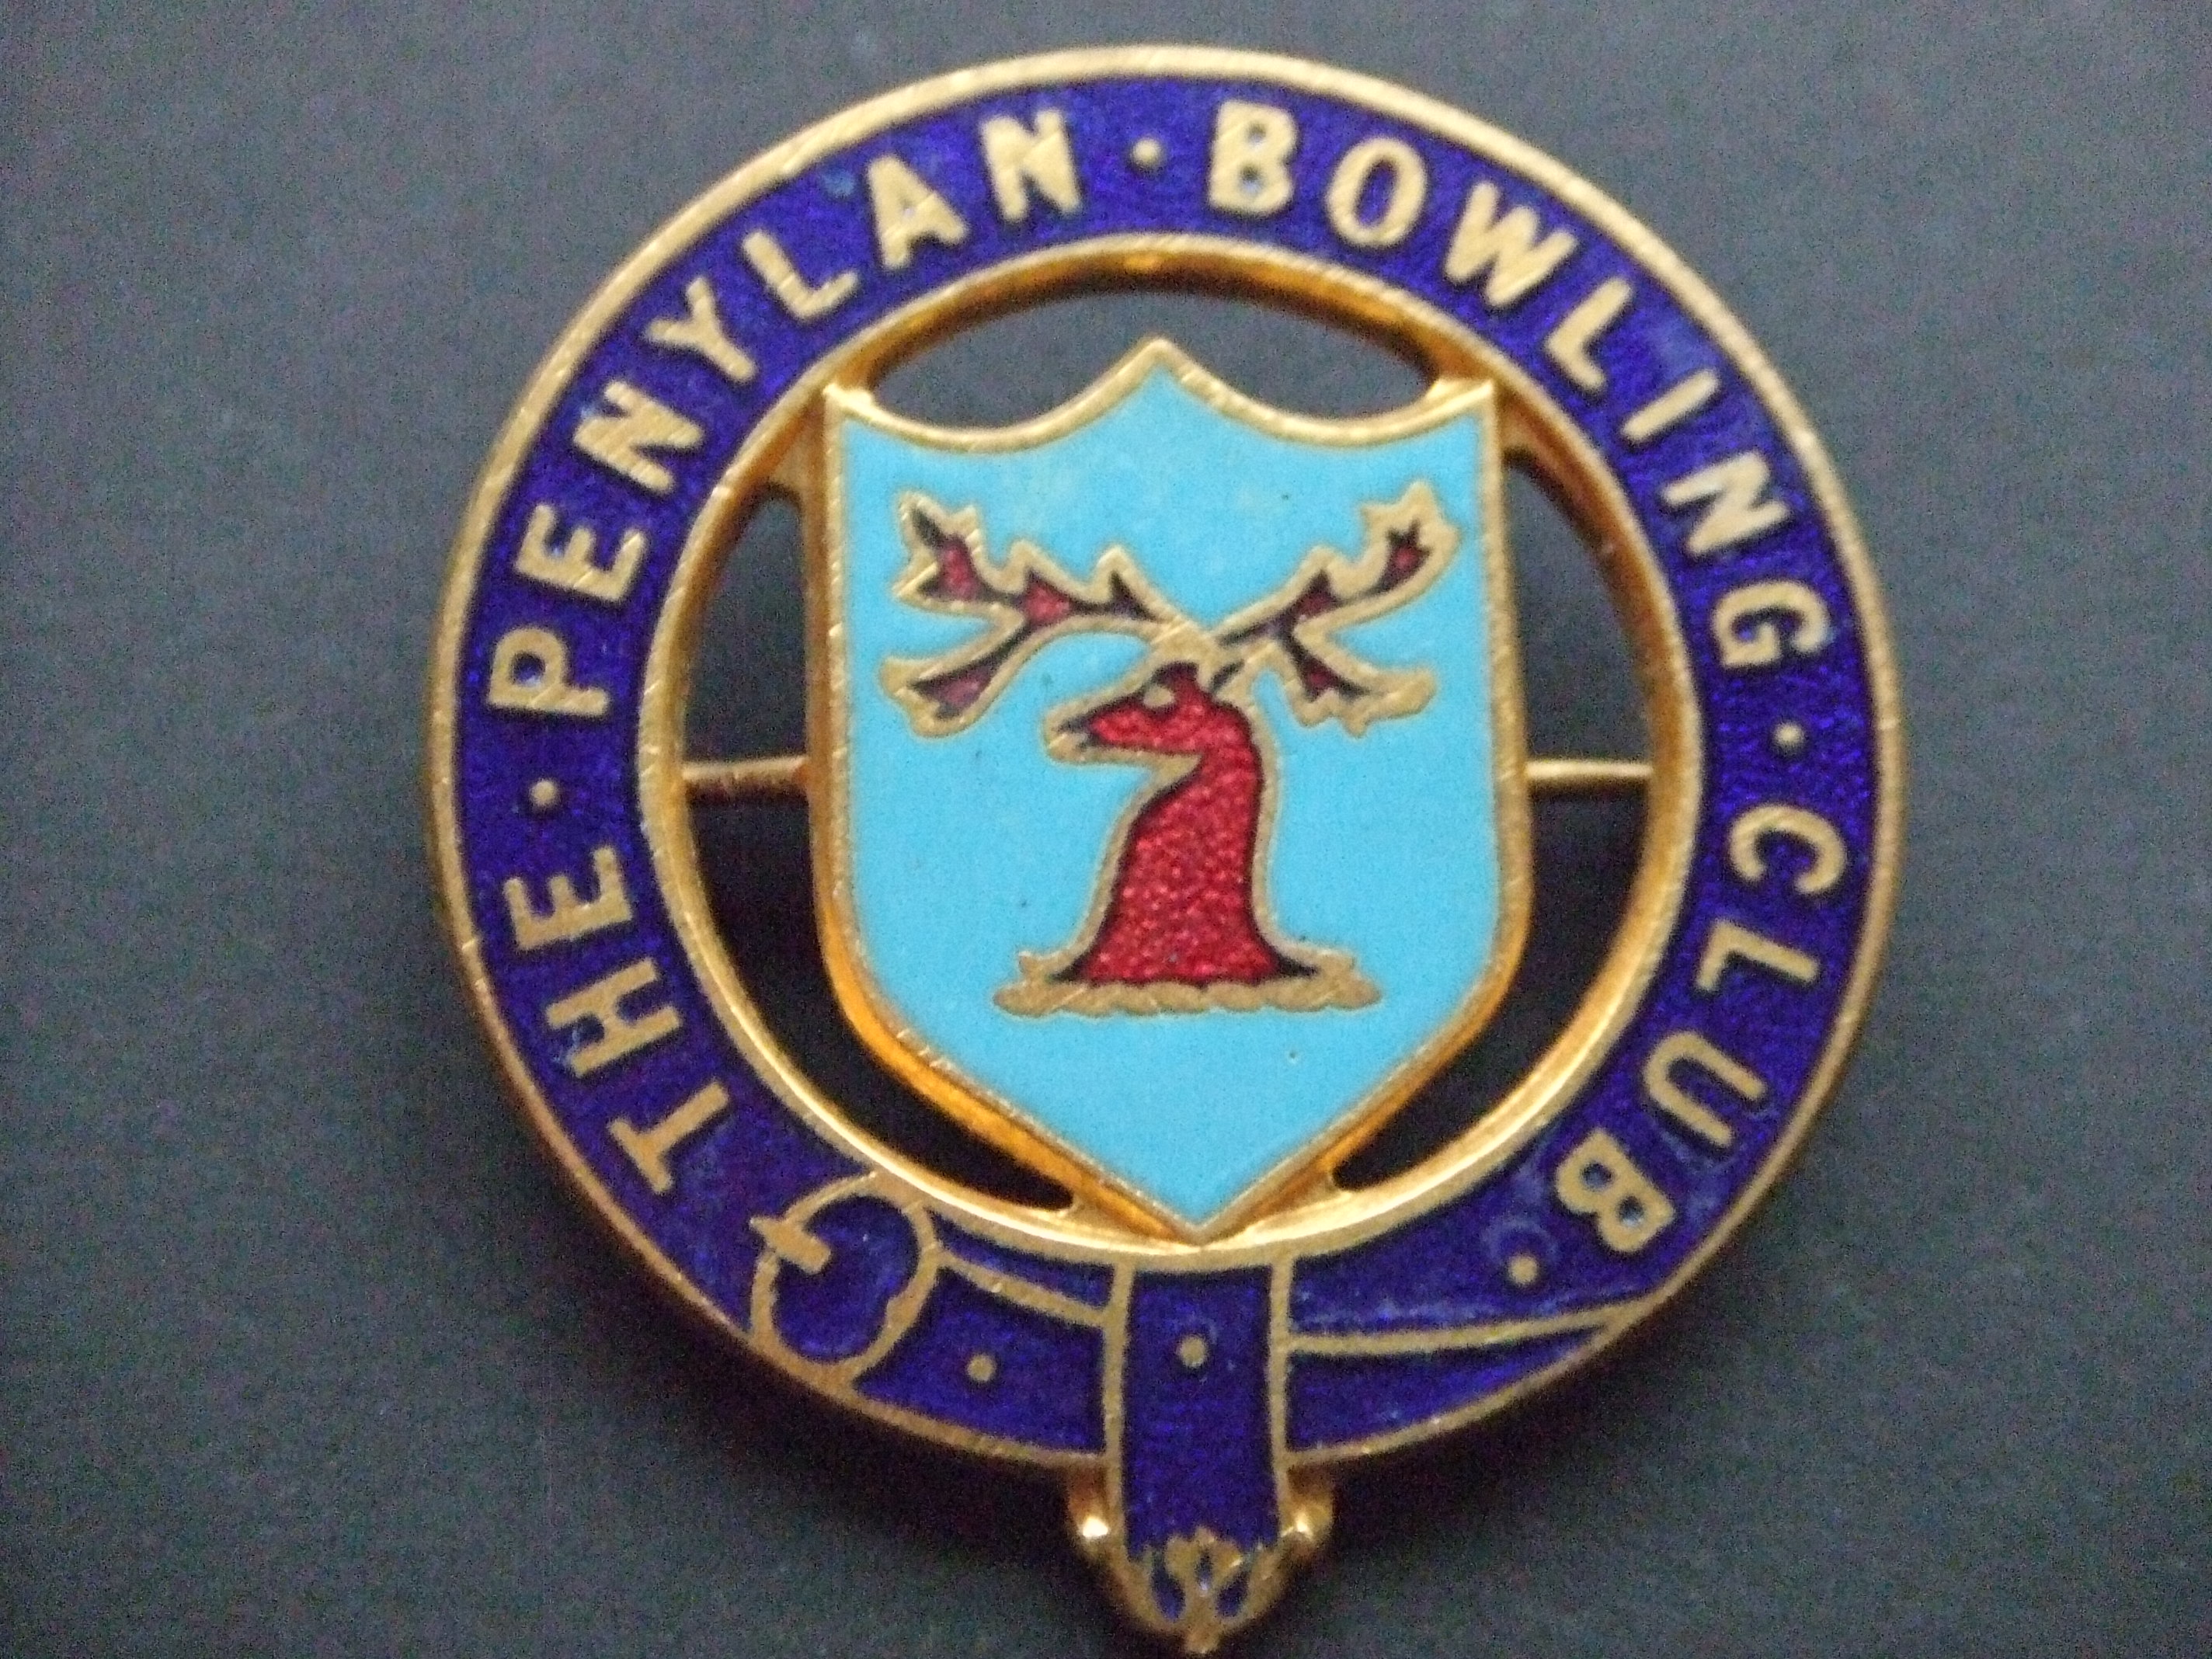 Bowling Club  Penylan Cardiff England